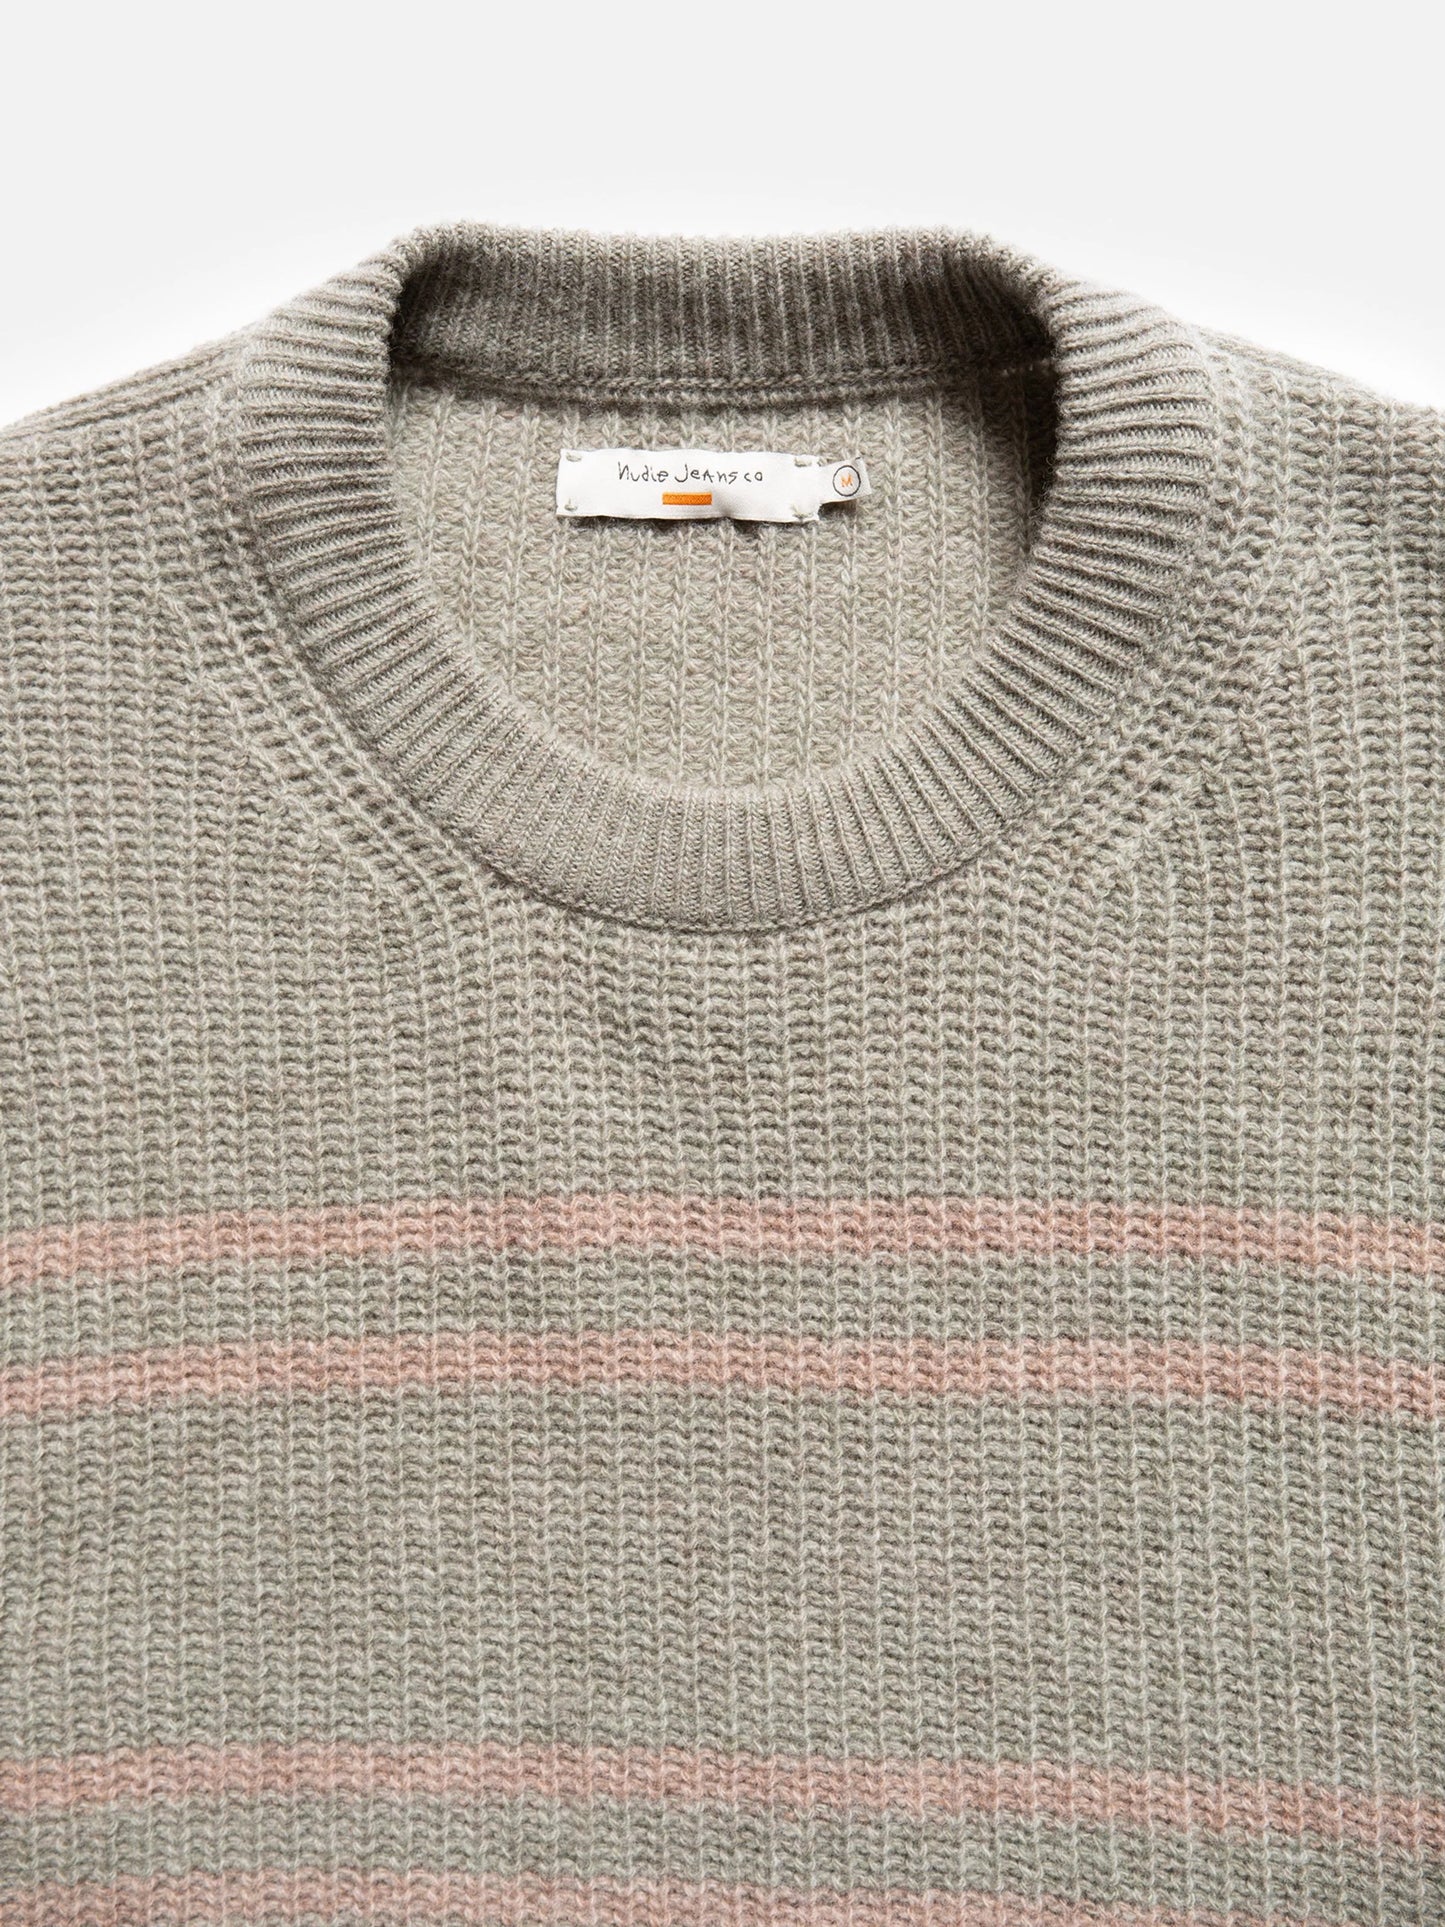 Gurra Striped Sweater